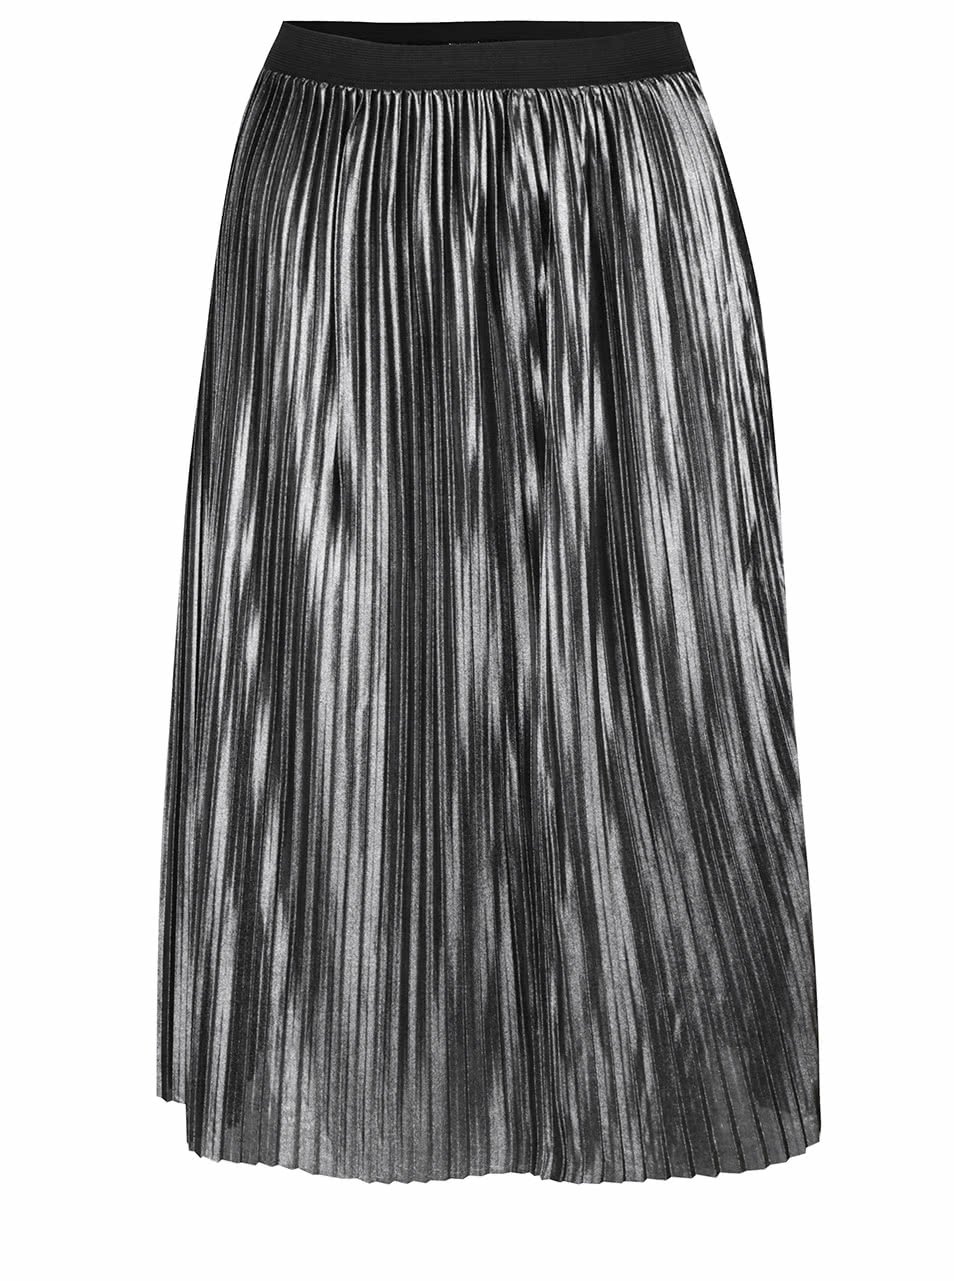 Metalická midi sukně ve stříbrné barvě Jacqueline de Yong Meta